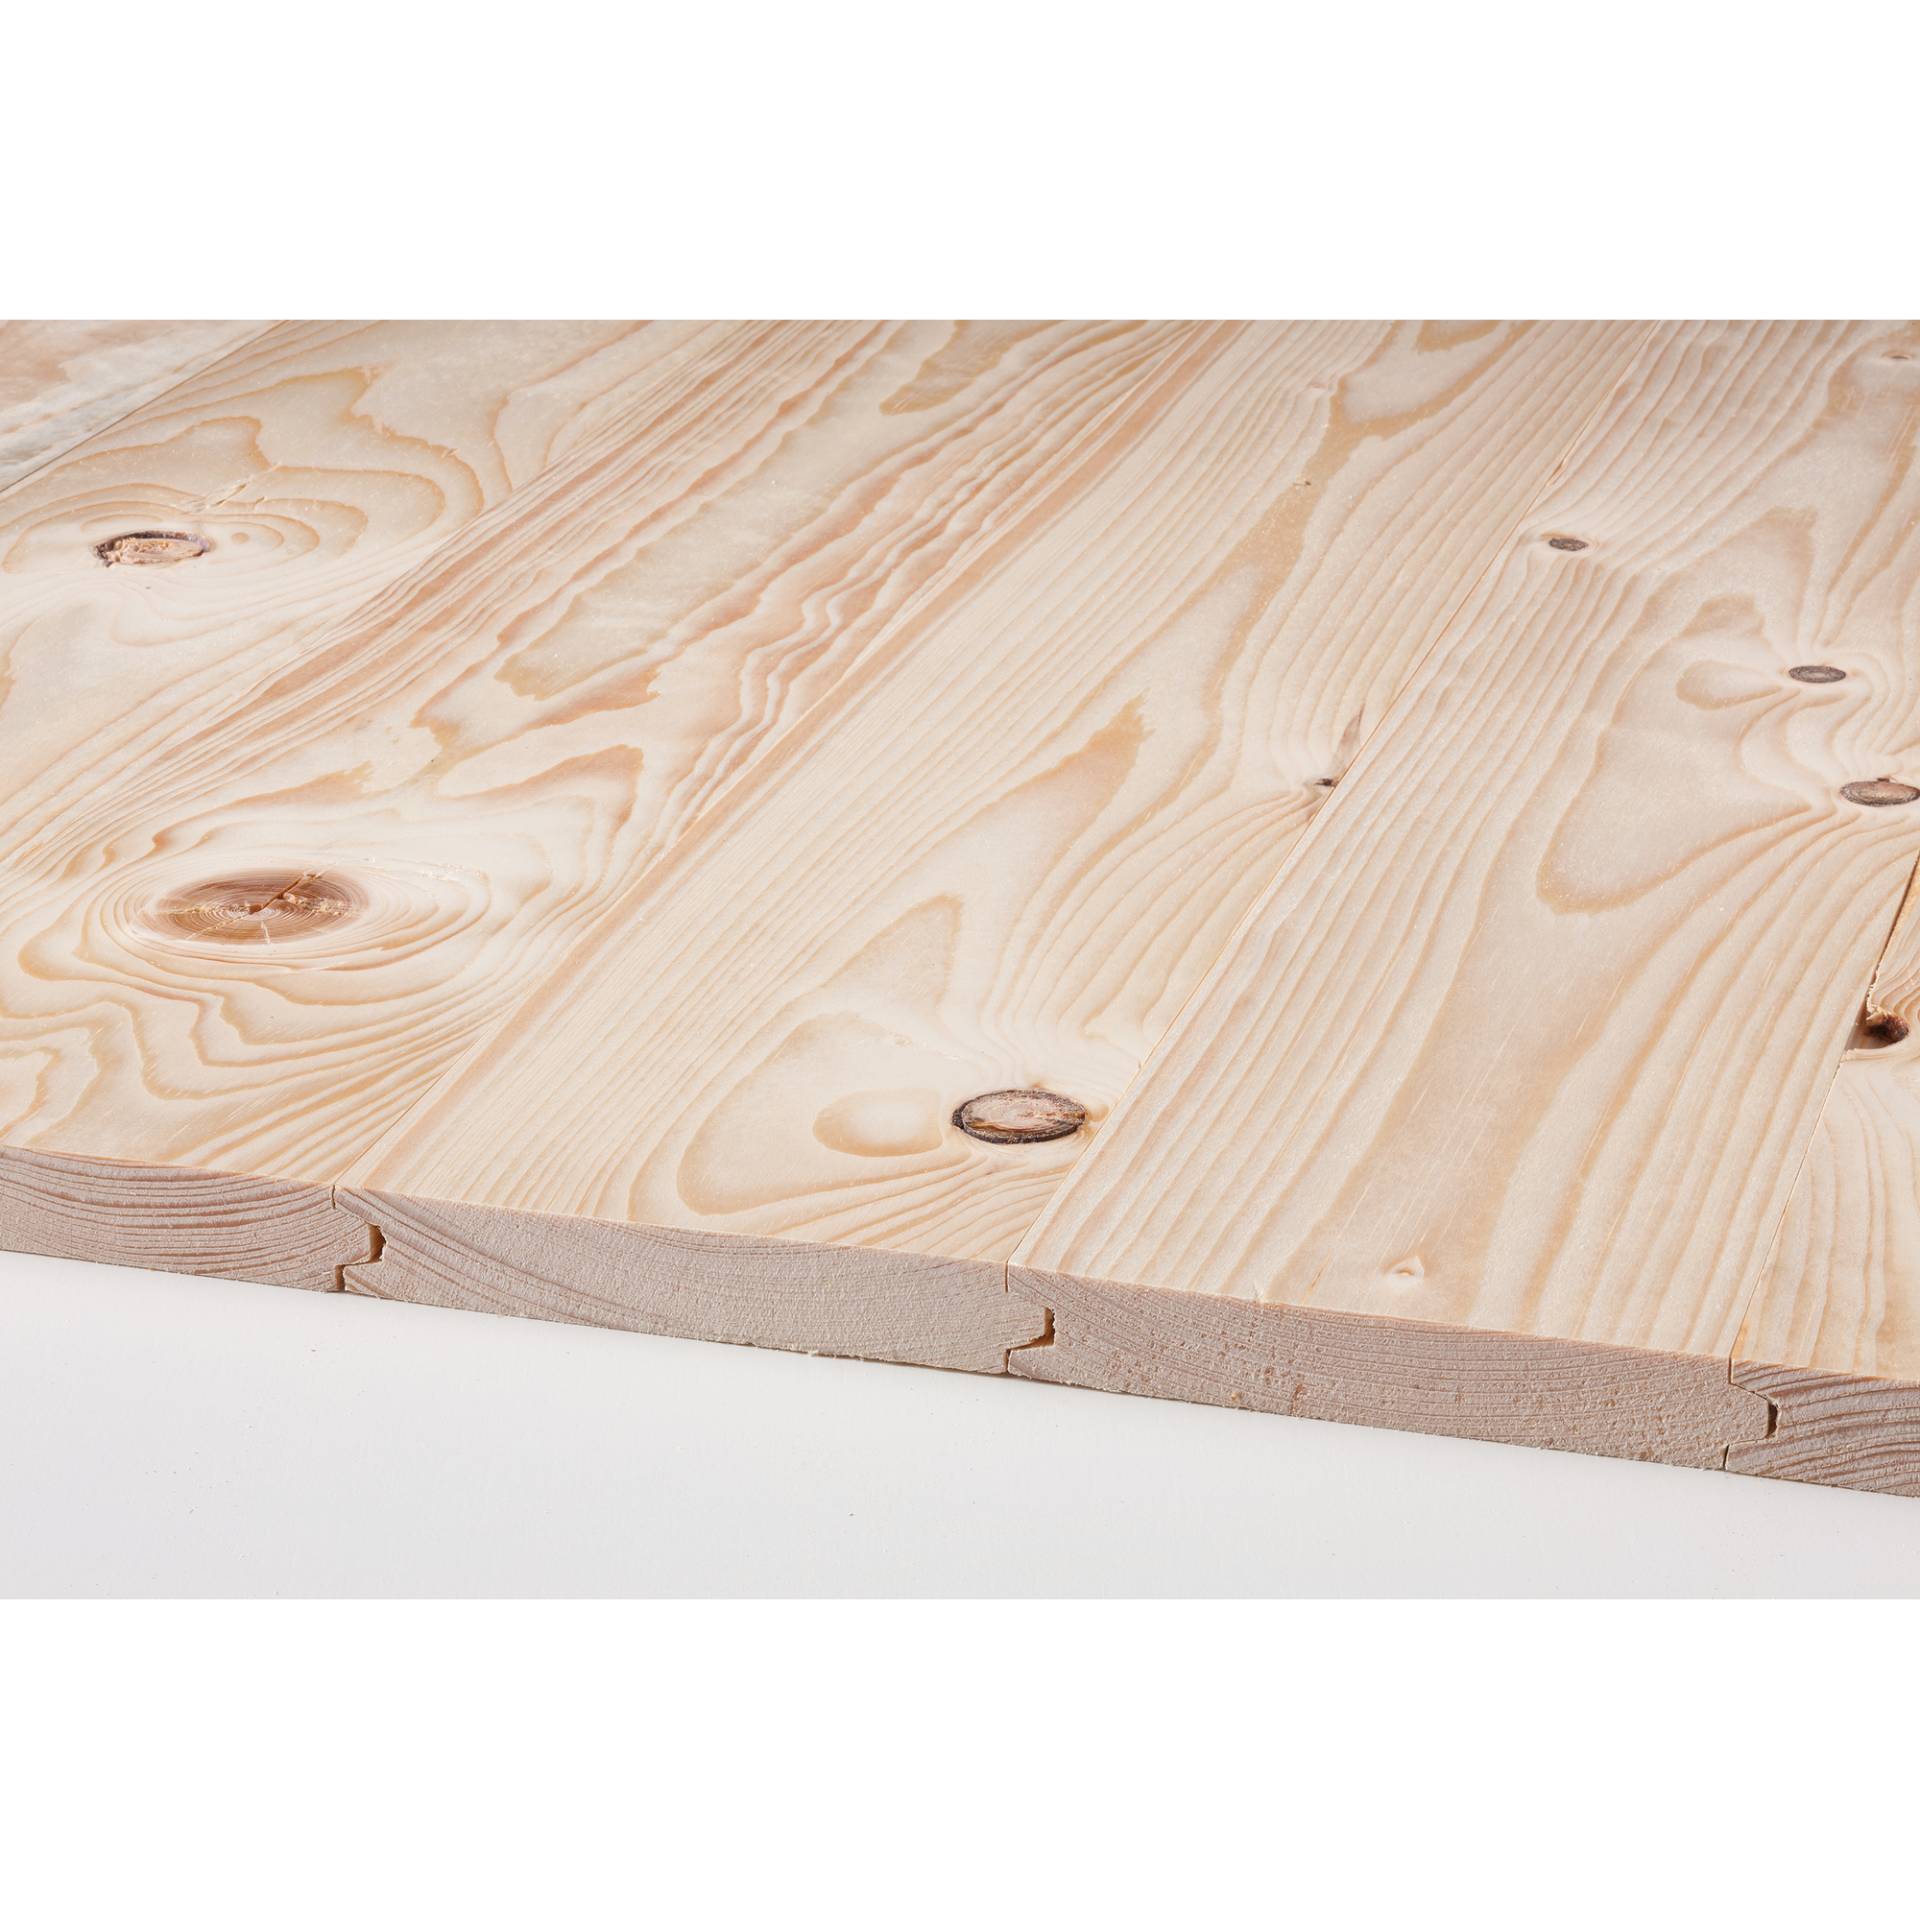 binderholz Rauspund gehobelt 3000 x 96 x 19 mm von binderholz